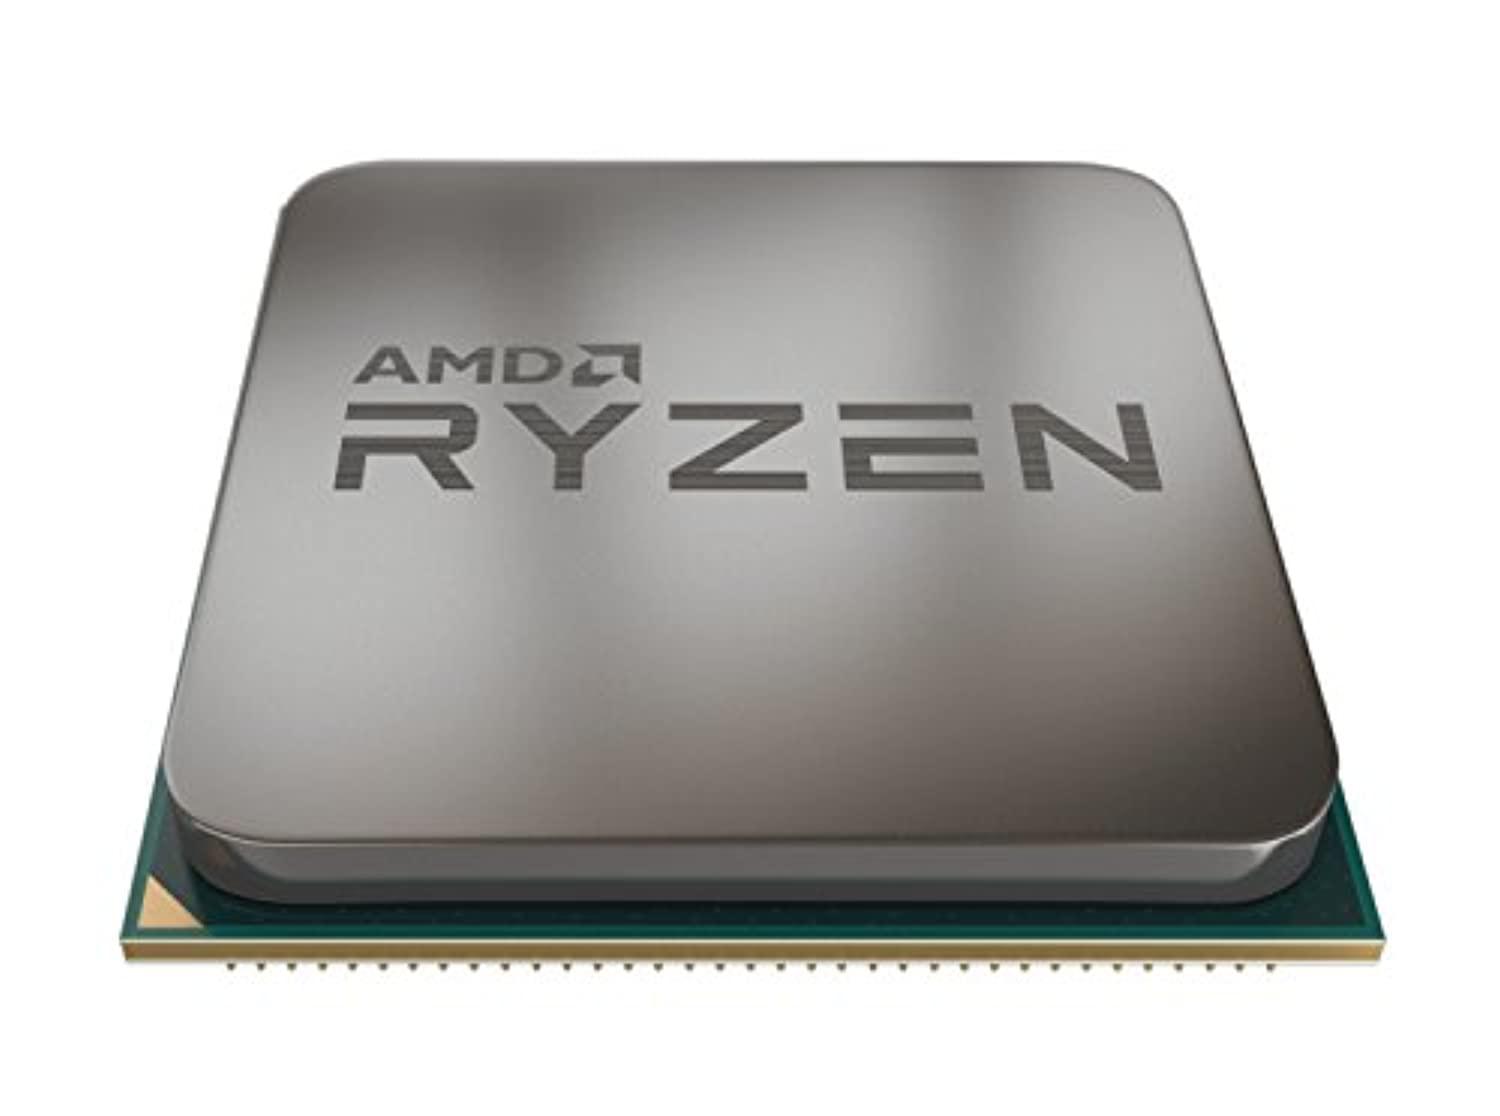 amd ryzen 7 2700x processor with wraith prism led cooler - yd270xbgafbox